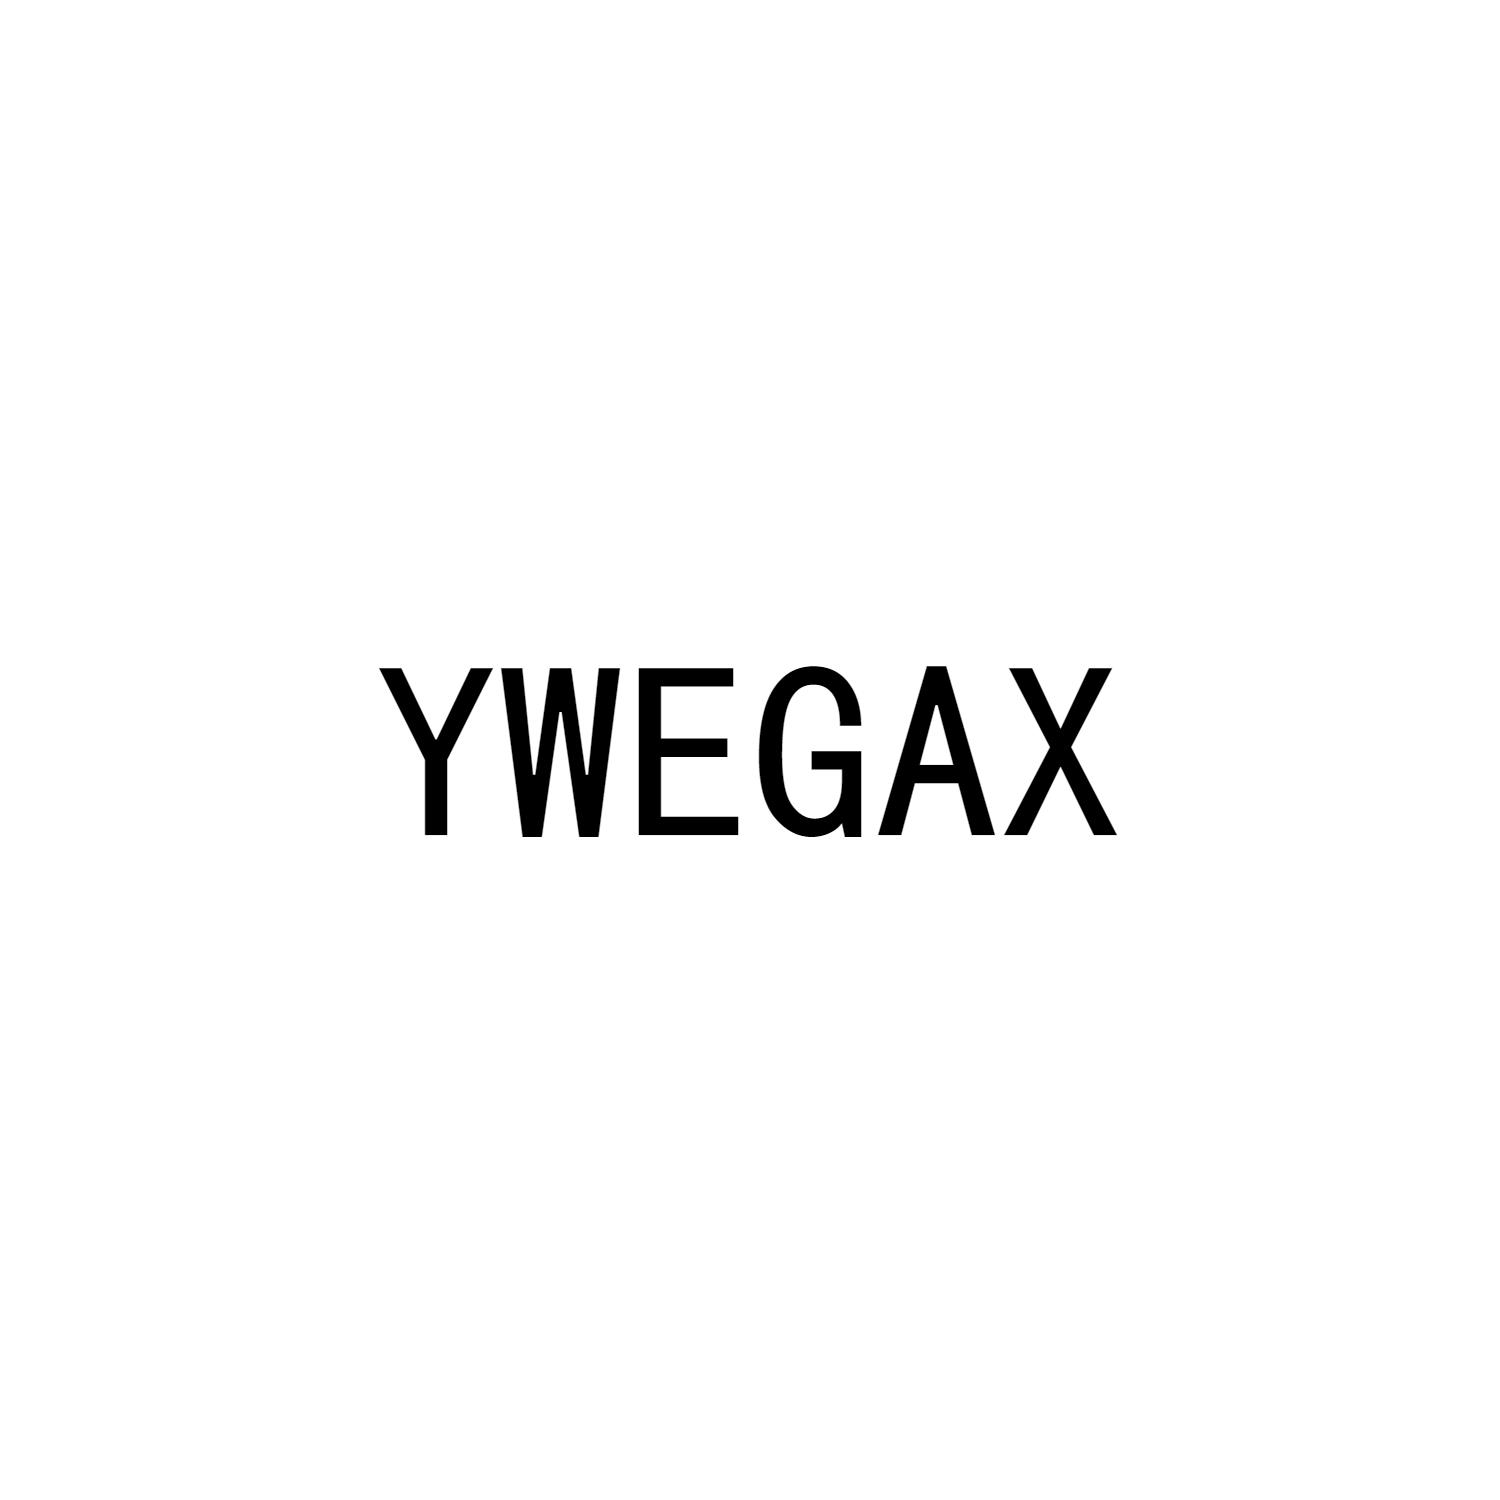 YWEGAX